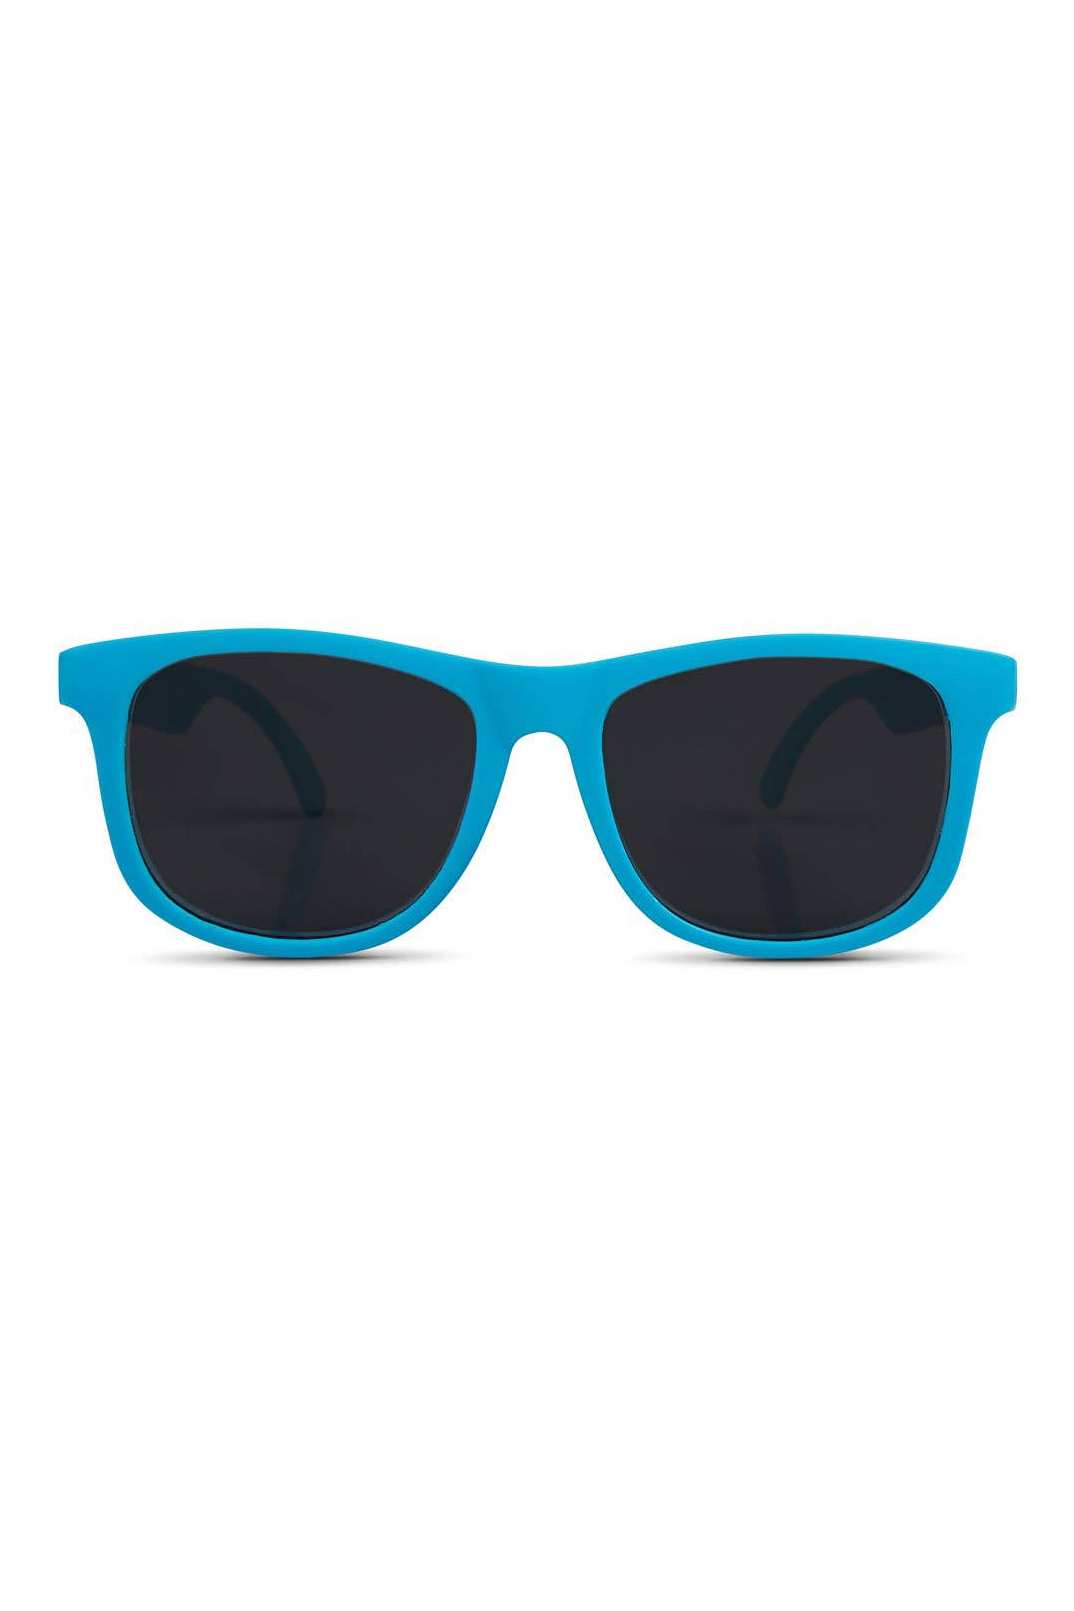 CLASSICS Sunglasses - Blue - Tea for Three: A Children's Boutique-New Arrivals-TheT43Shop